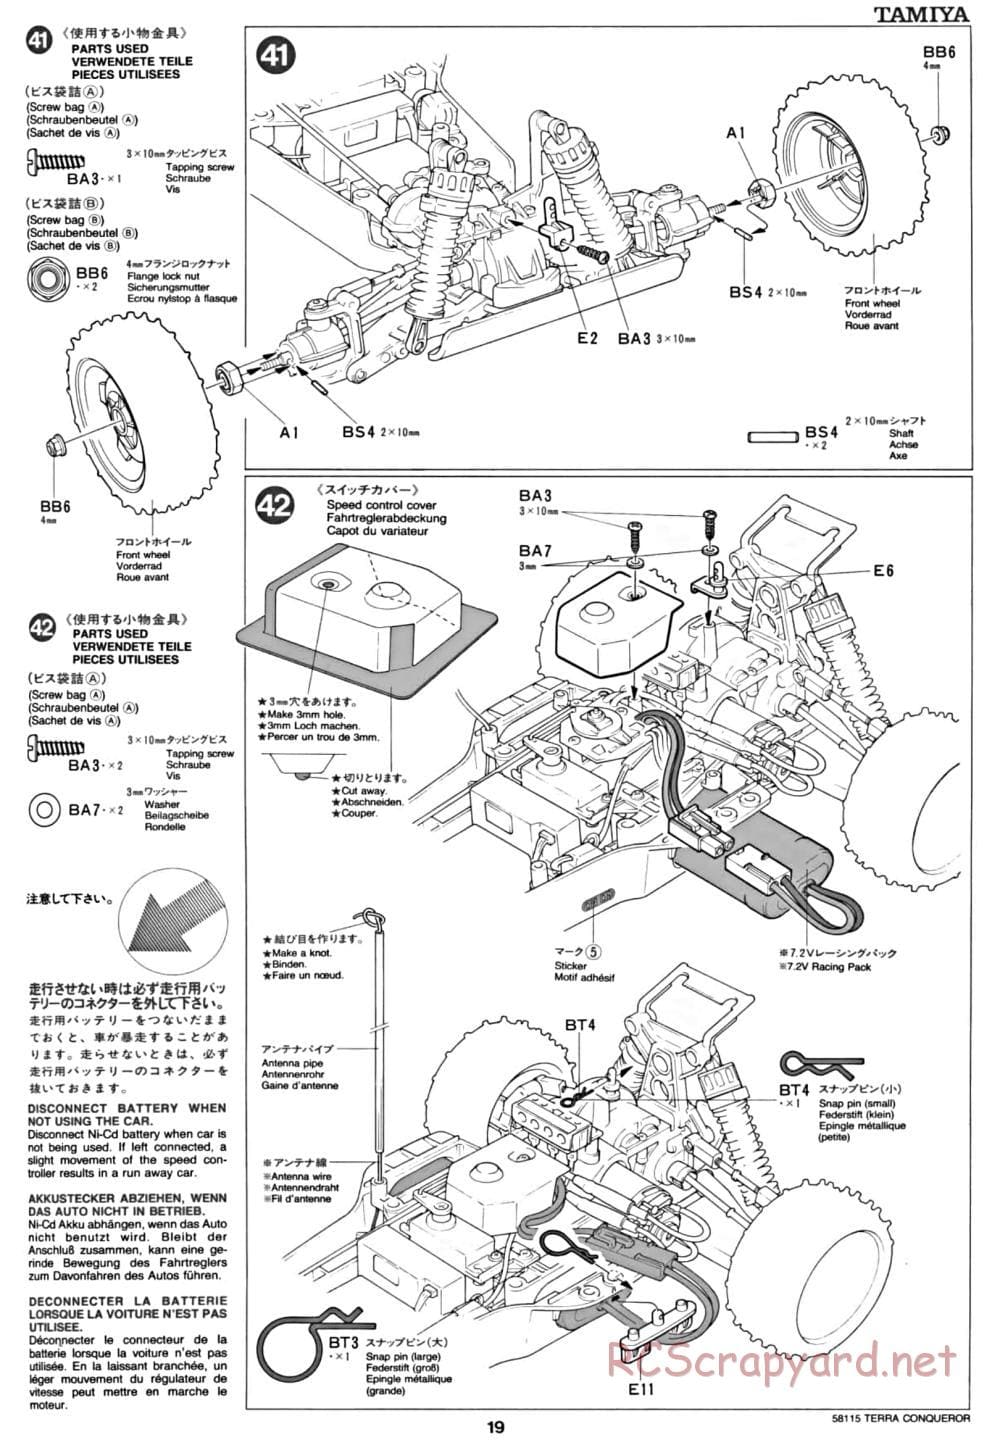 Tamiya - Terra Conqueror Chassis - Manual - Page 19